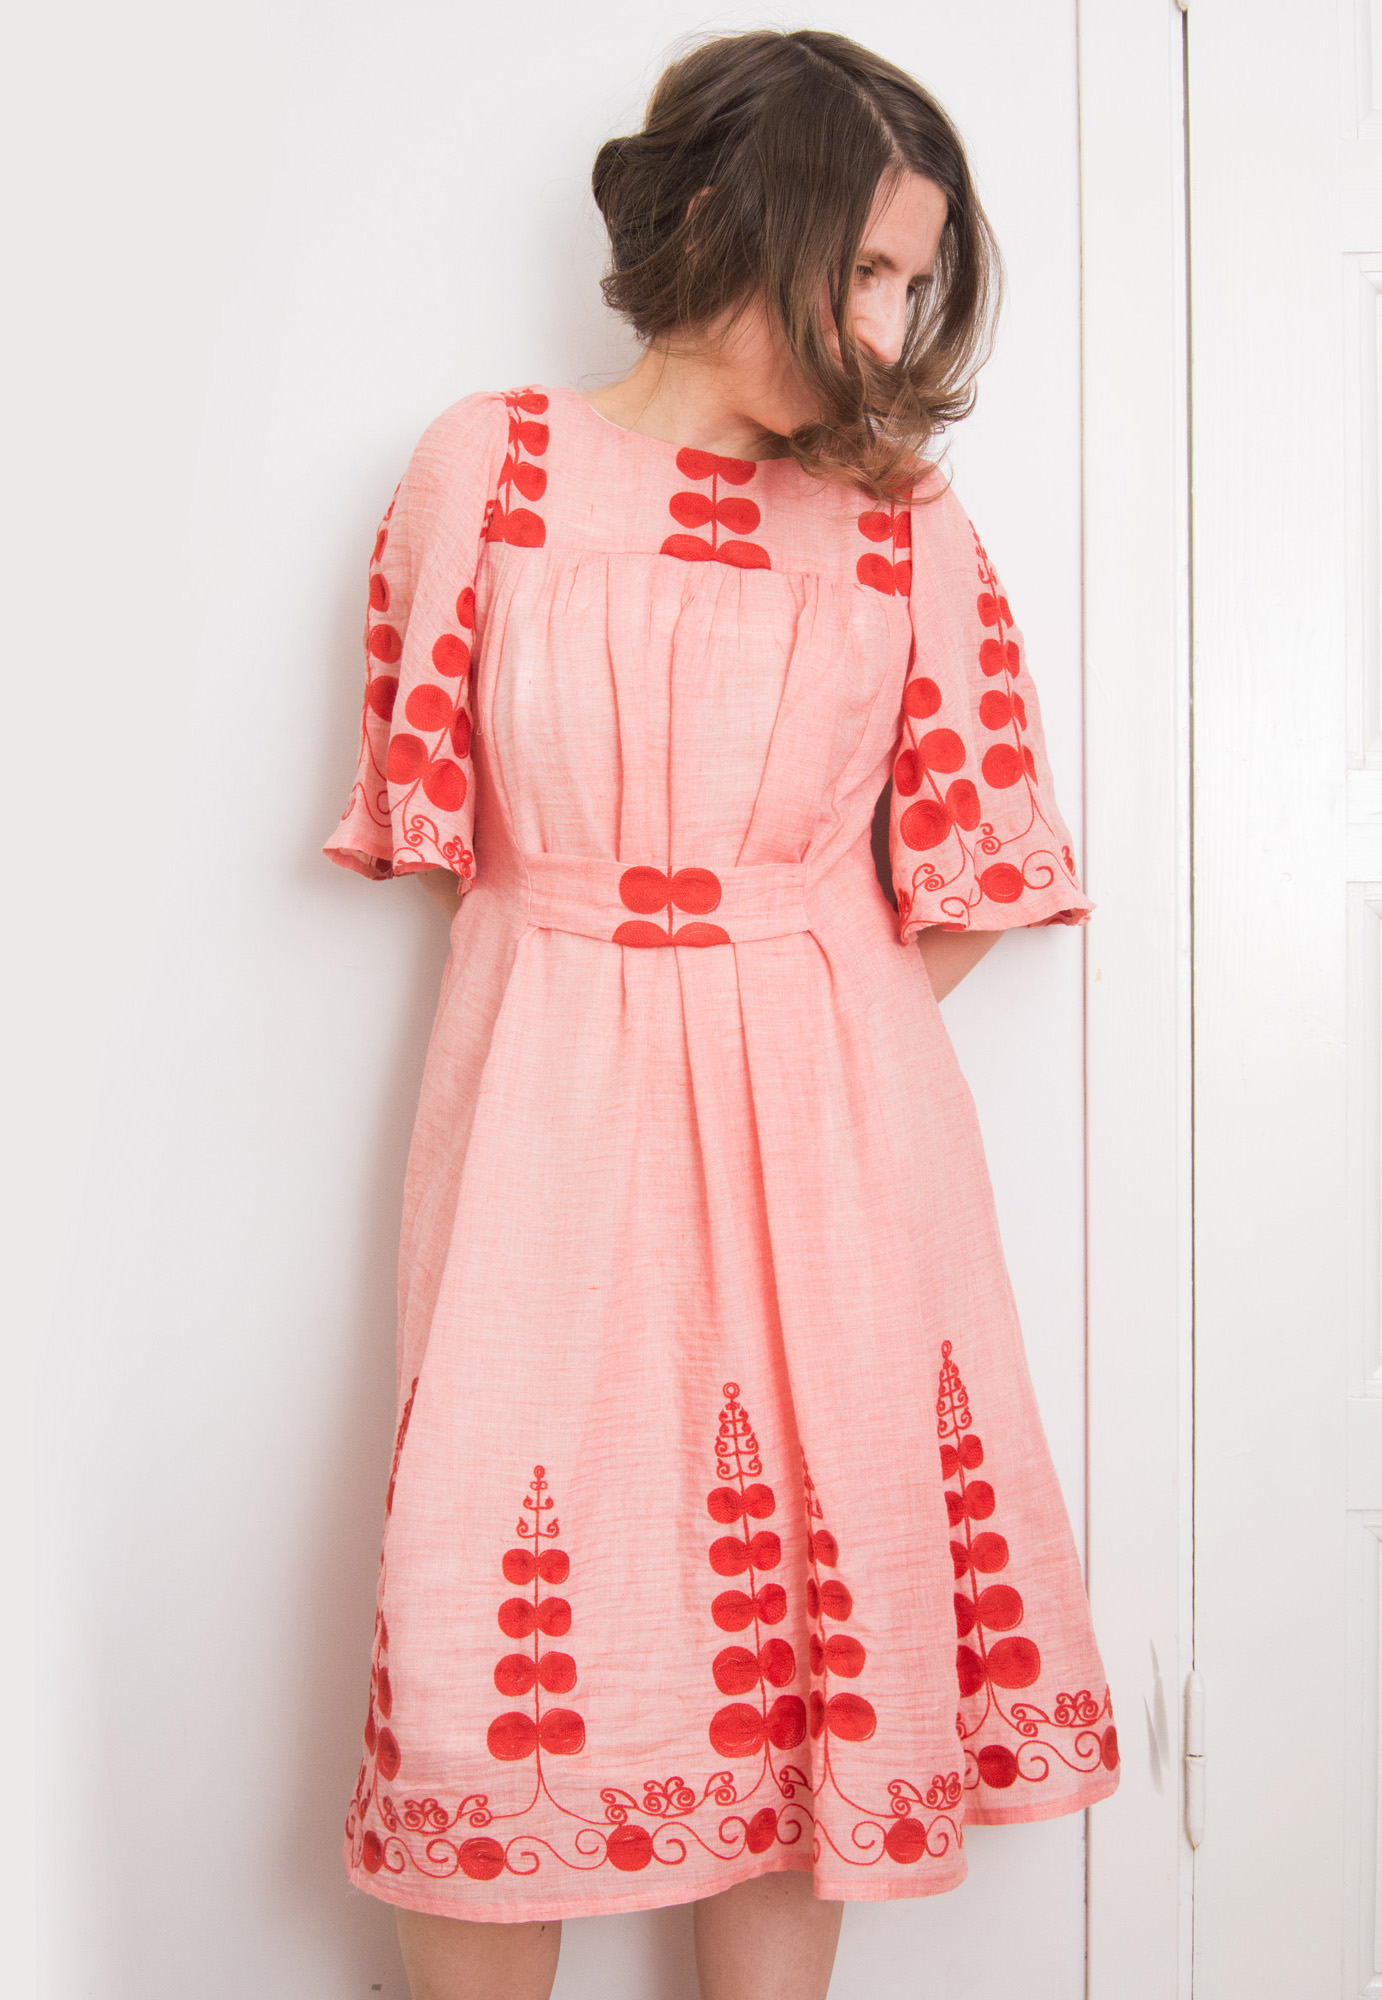 Burdastyle frills dress – Sewing Projects | BurdaStyle.com